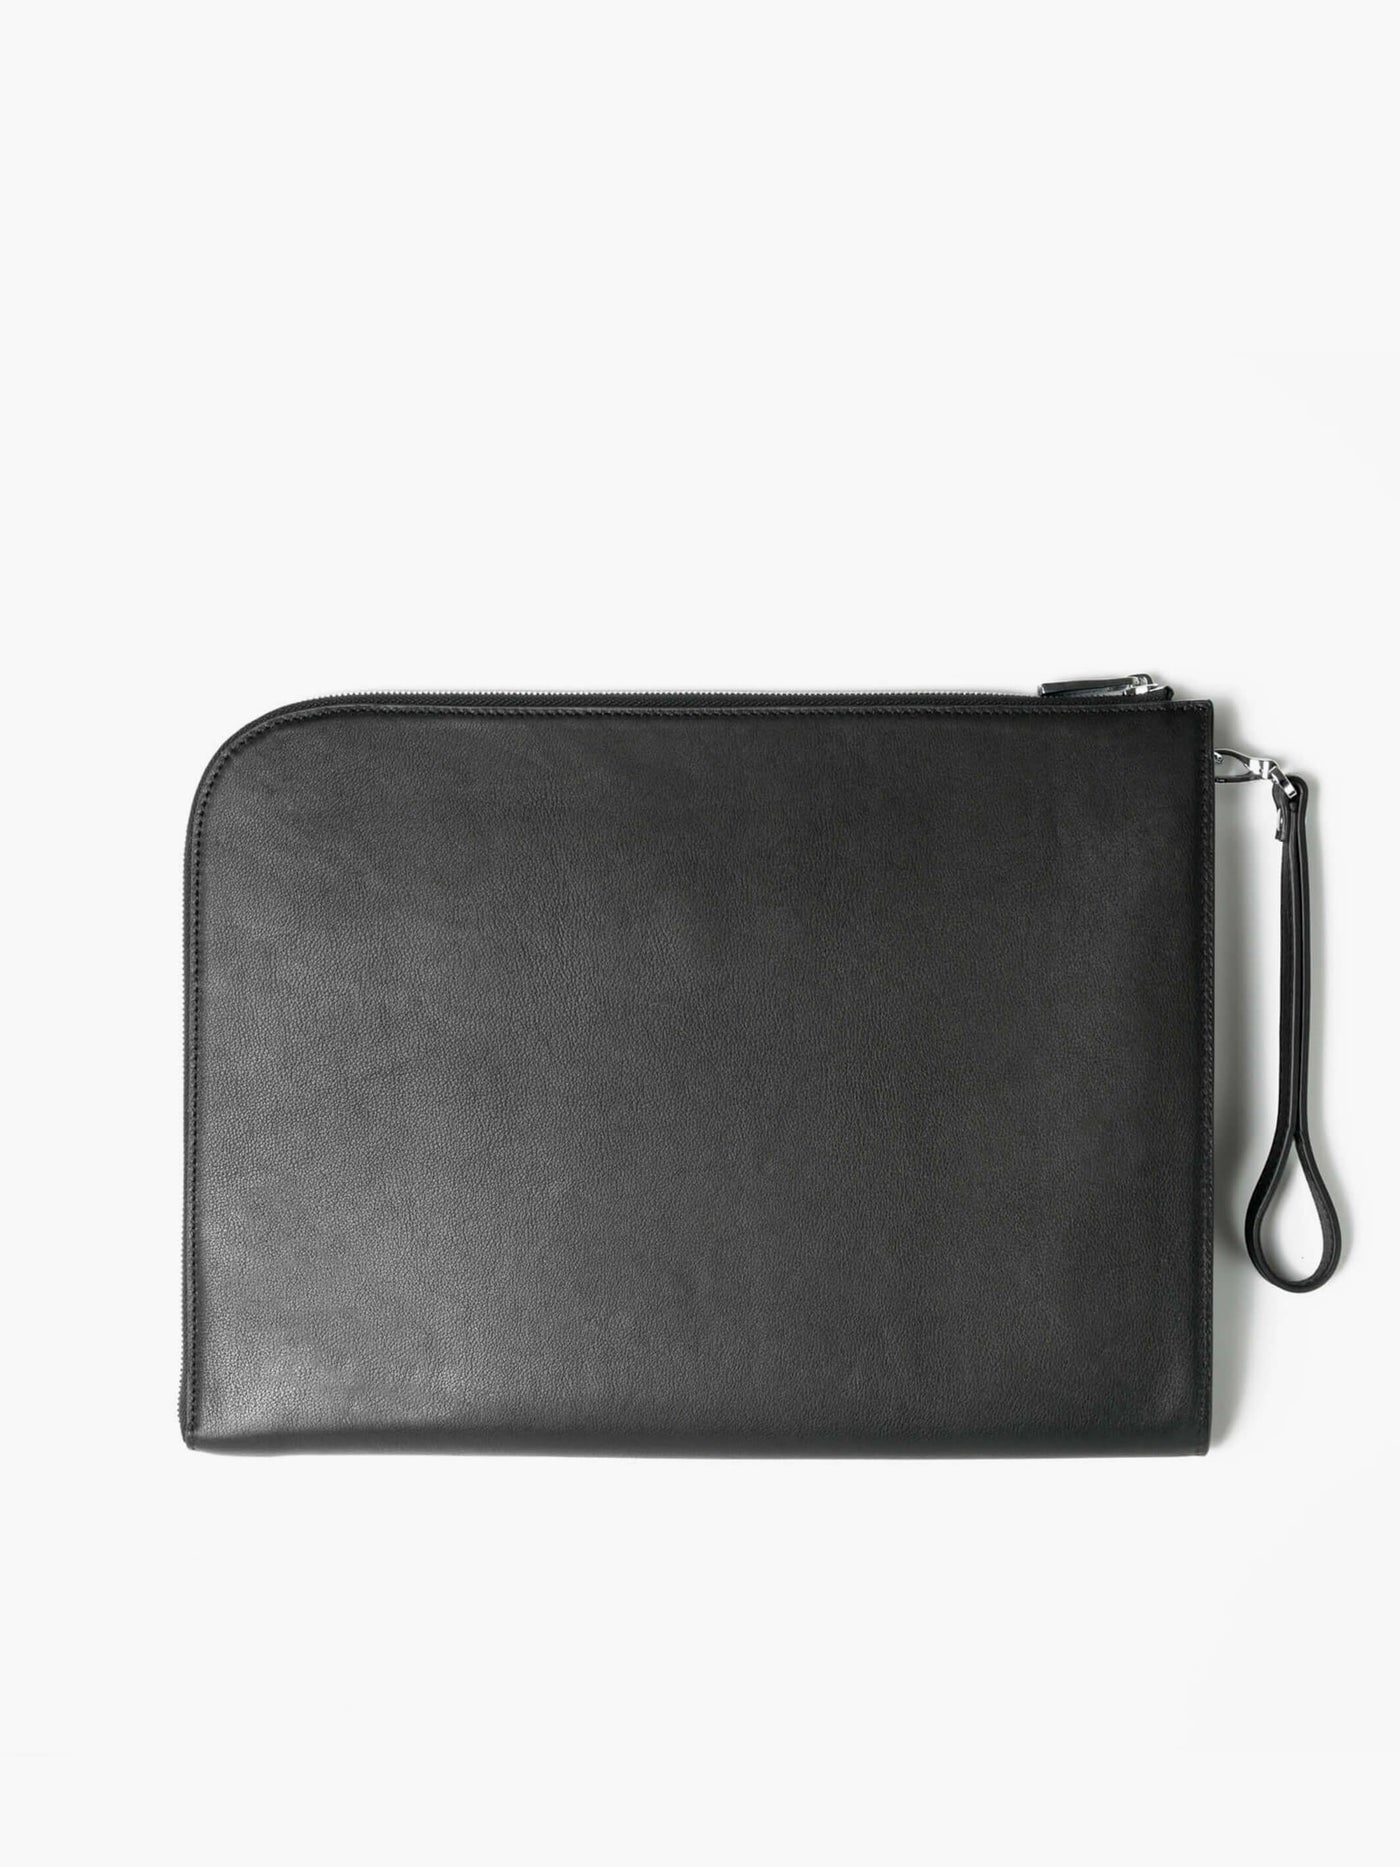 Men Leather Clutch Purse Wallet Wristlet Zipper Handbags Coin Phone Card  Carrier Organizer Holder Wrist Bag Pack Business Travel